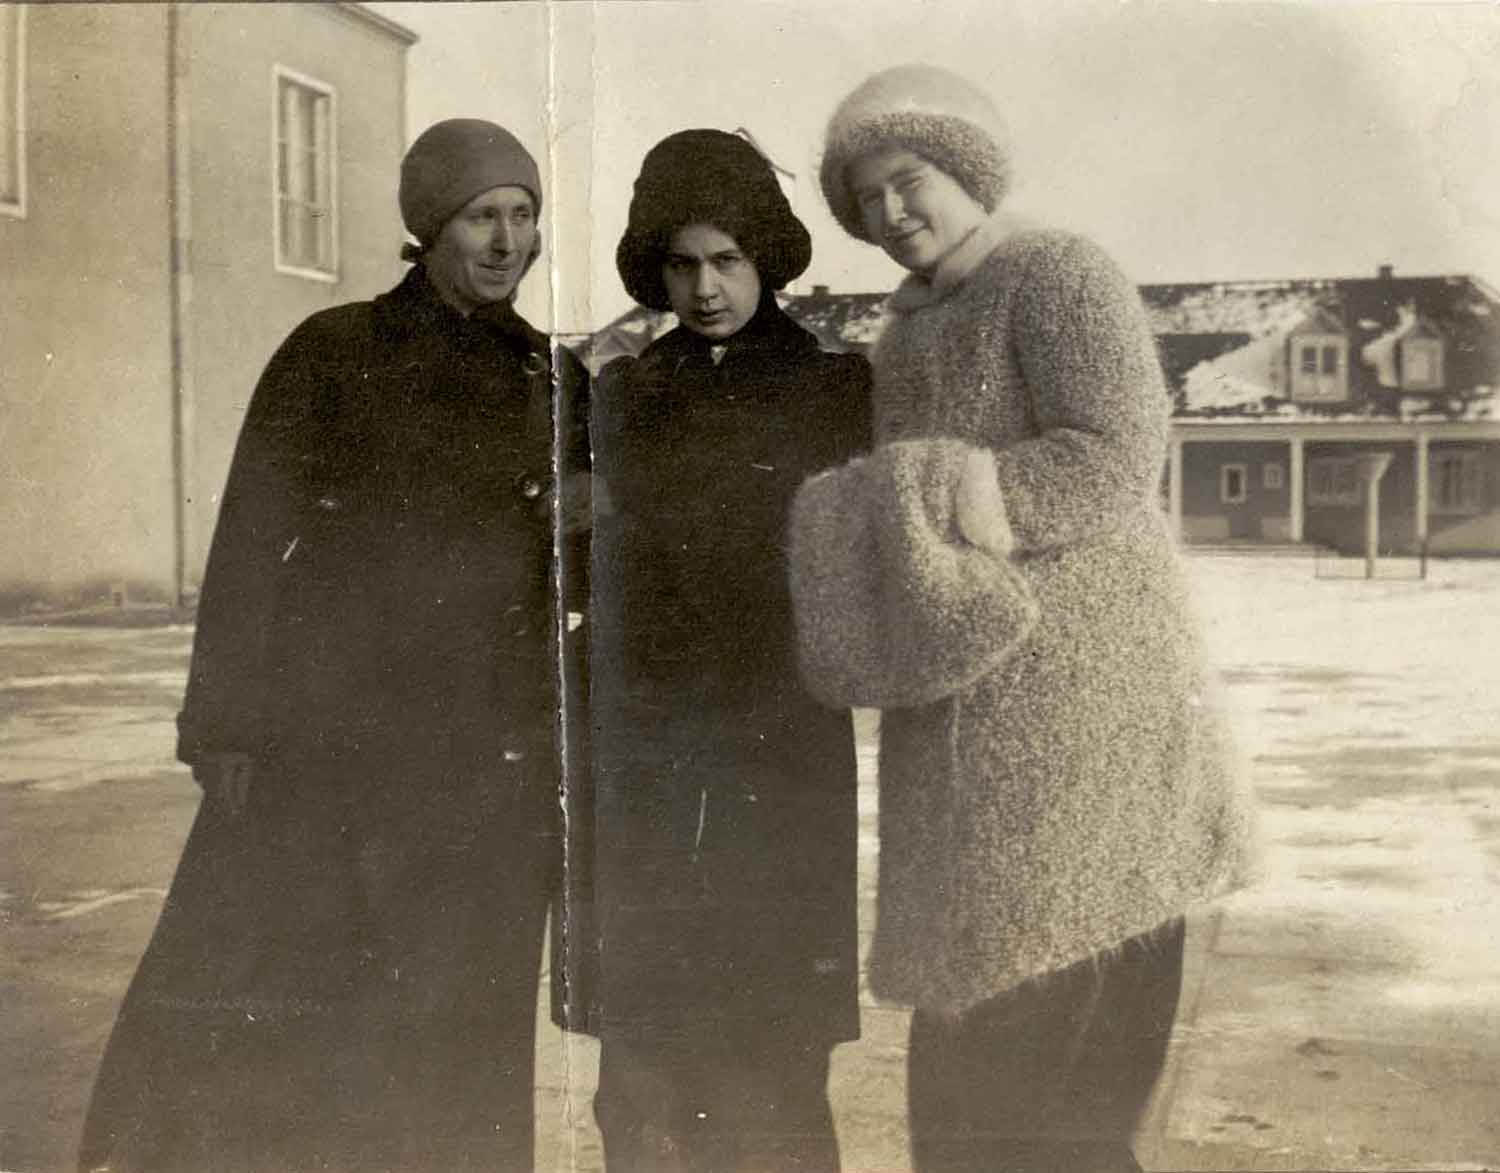 Foto, schwarz-weiß, außen: Drei Frauen mit Mützen in dicken Mänteln, zwei haben einen großen Pelz-Muff.